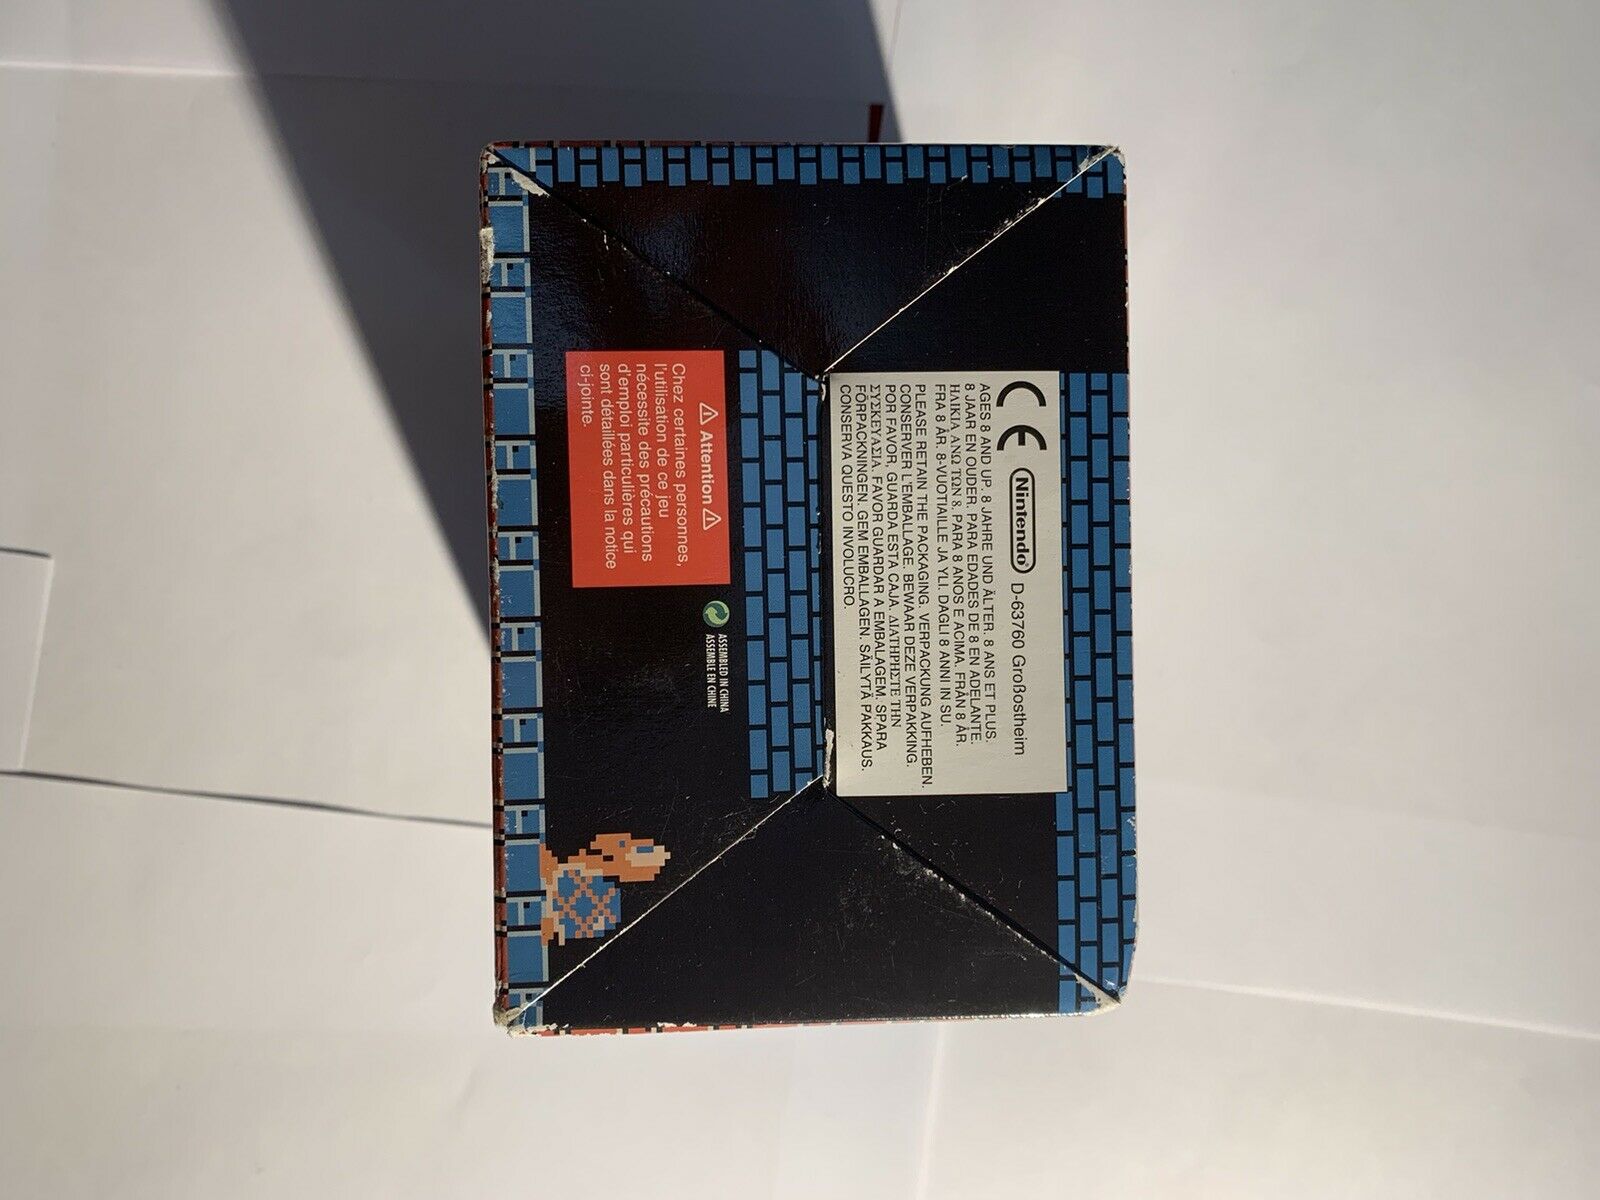 Game Boy Advance SP Classic NES упаковка